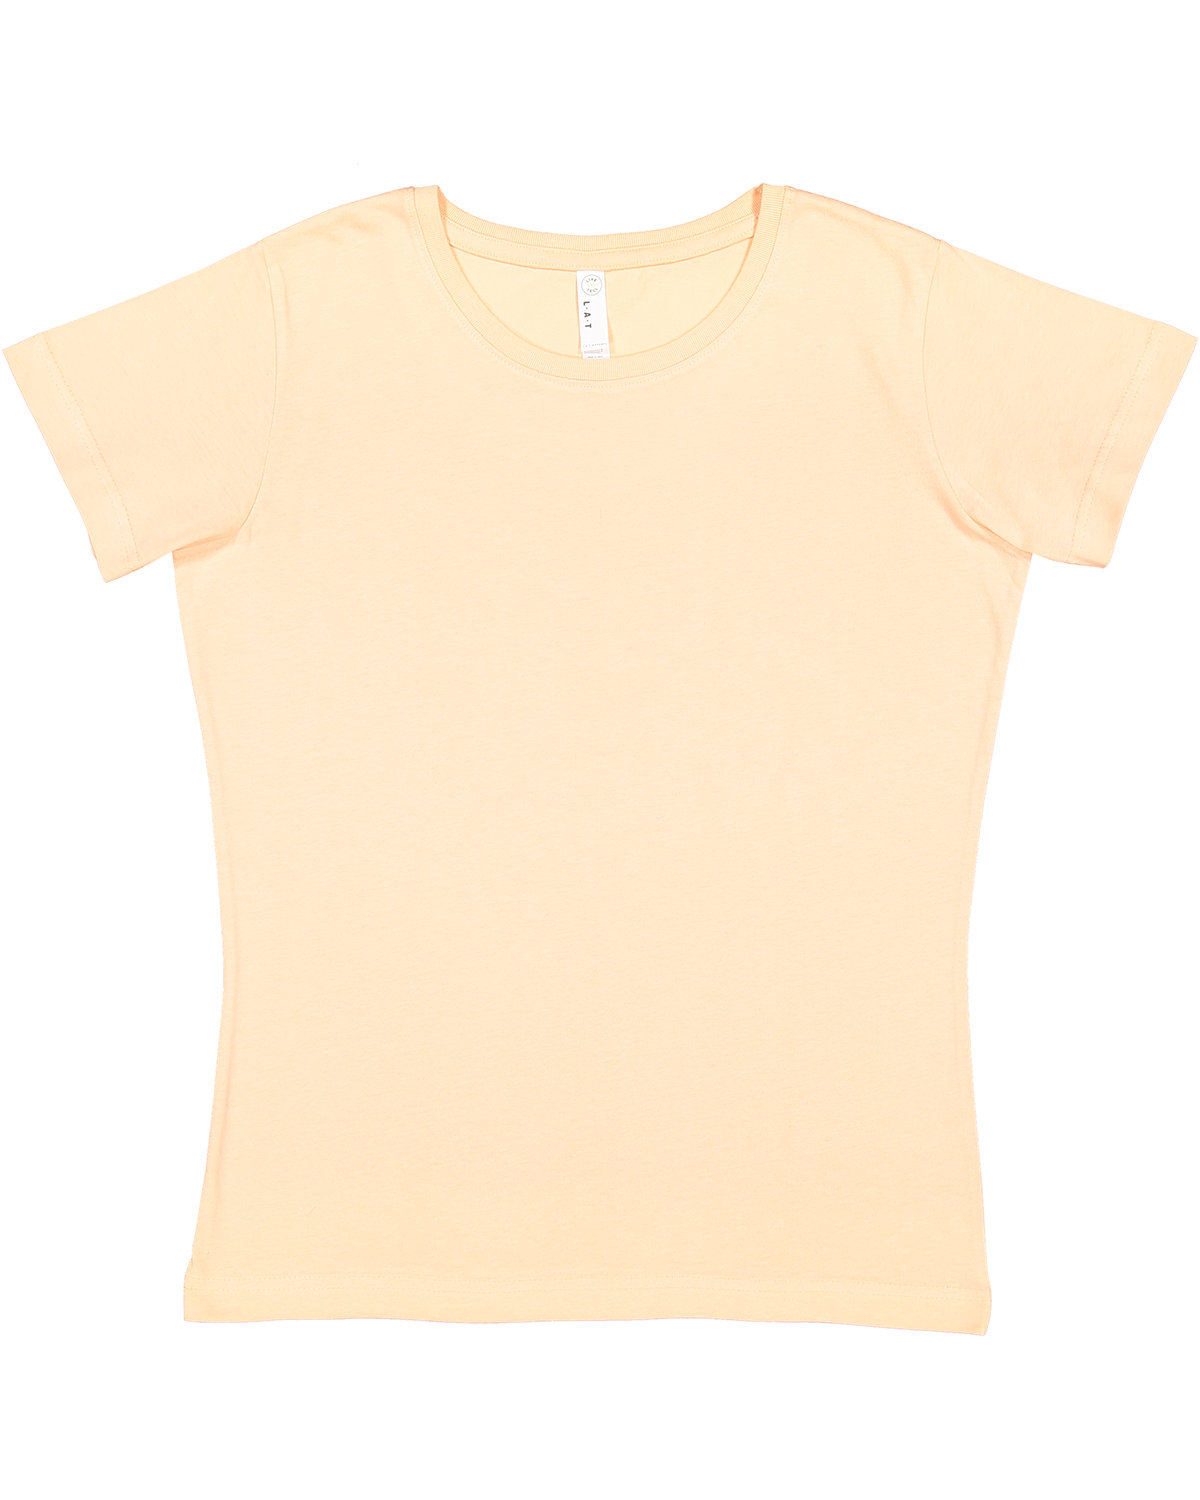 LAT 3516 Ladies Fine Jersey T Shirt Vintage camo-XL